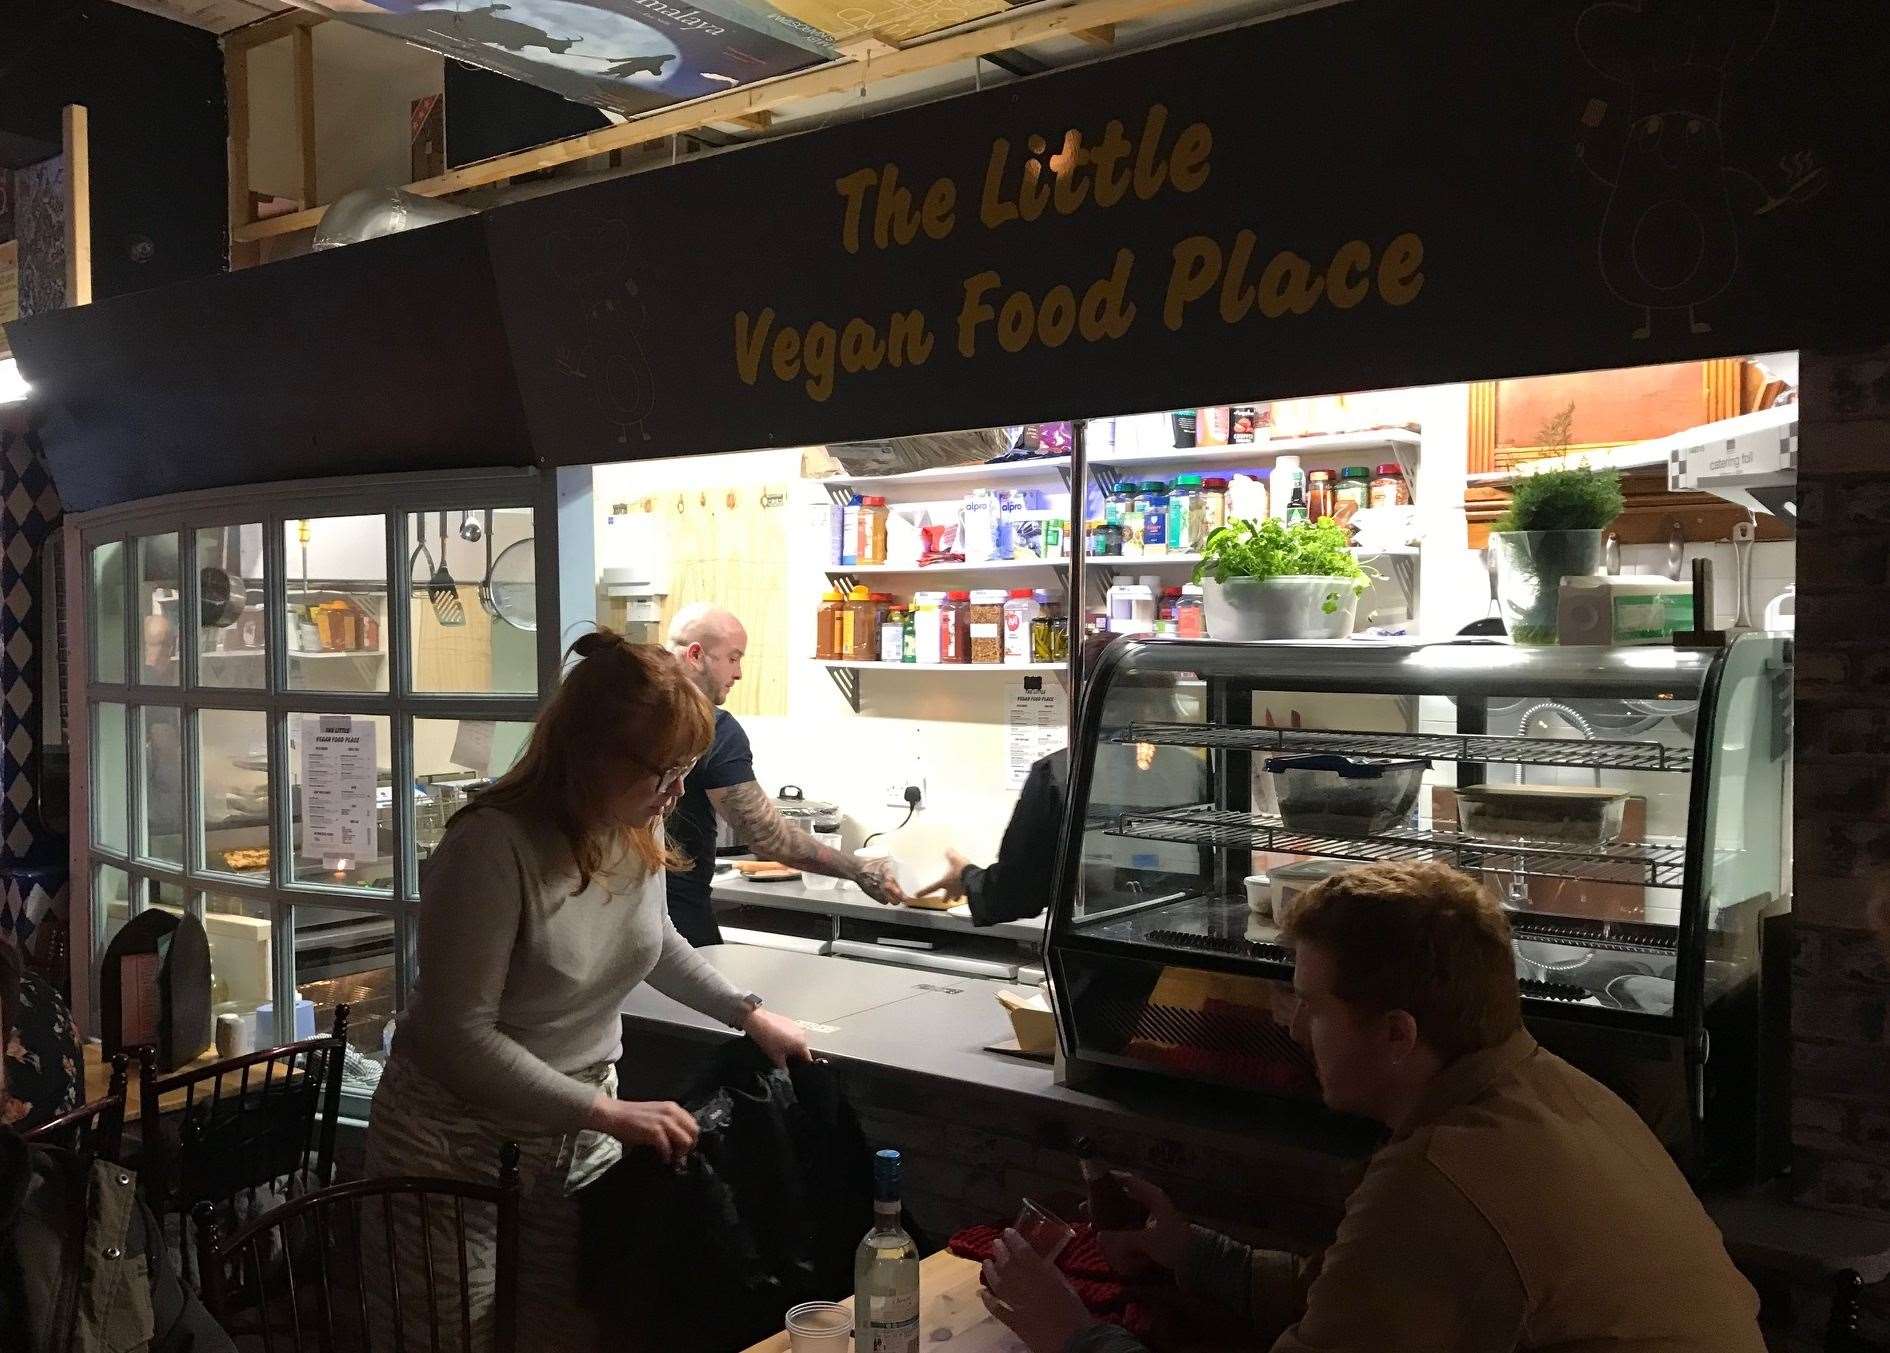 The Little Vegan Food Place is a hidden gem